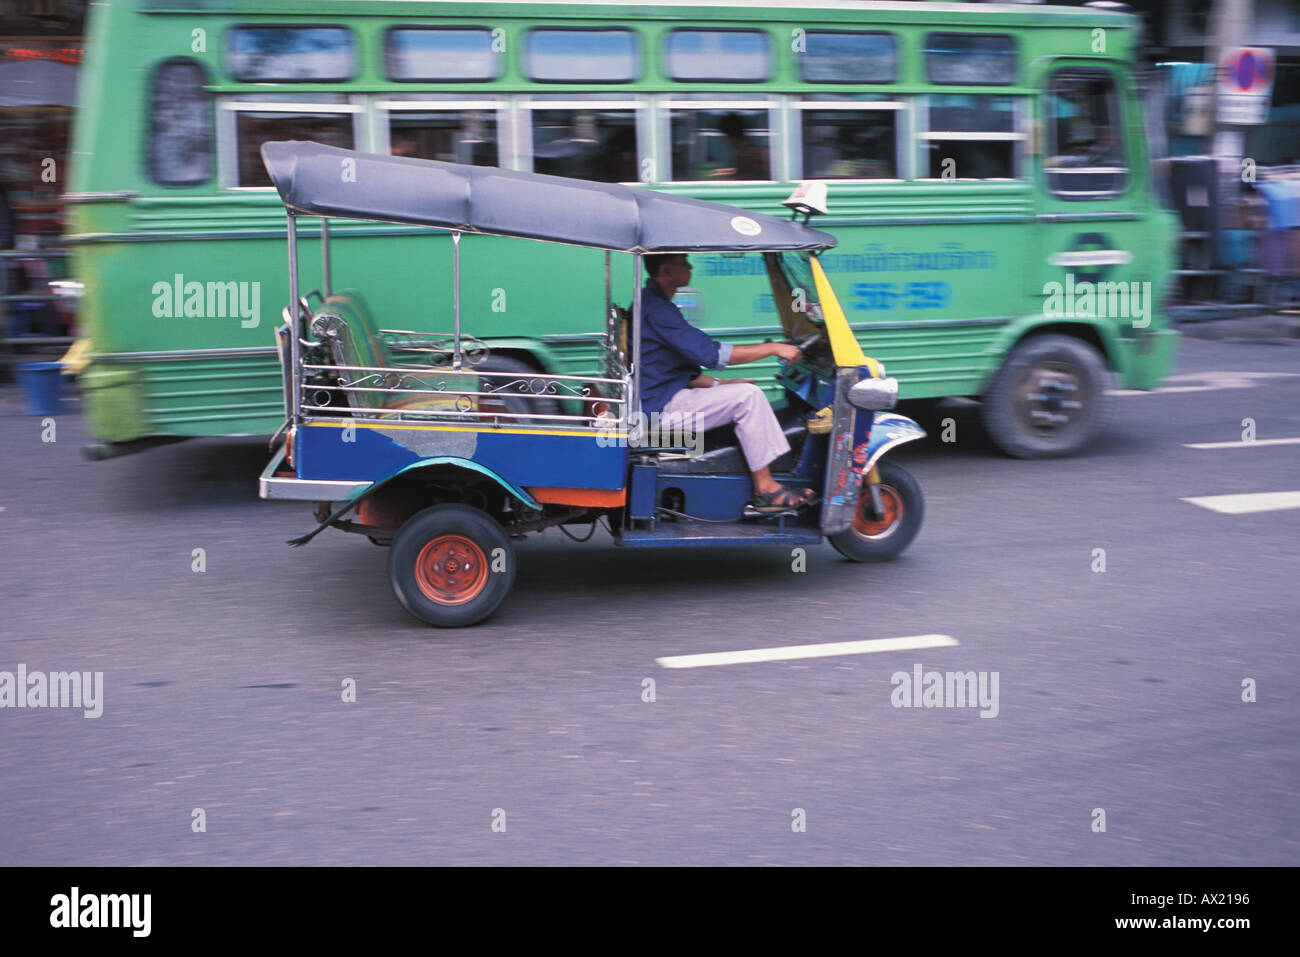 Trois roues asiatique green bus et taxi Banque D'Images